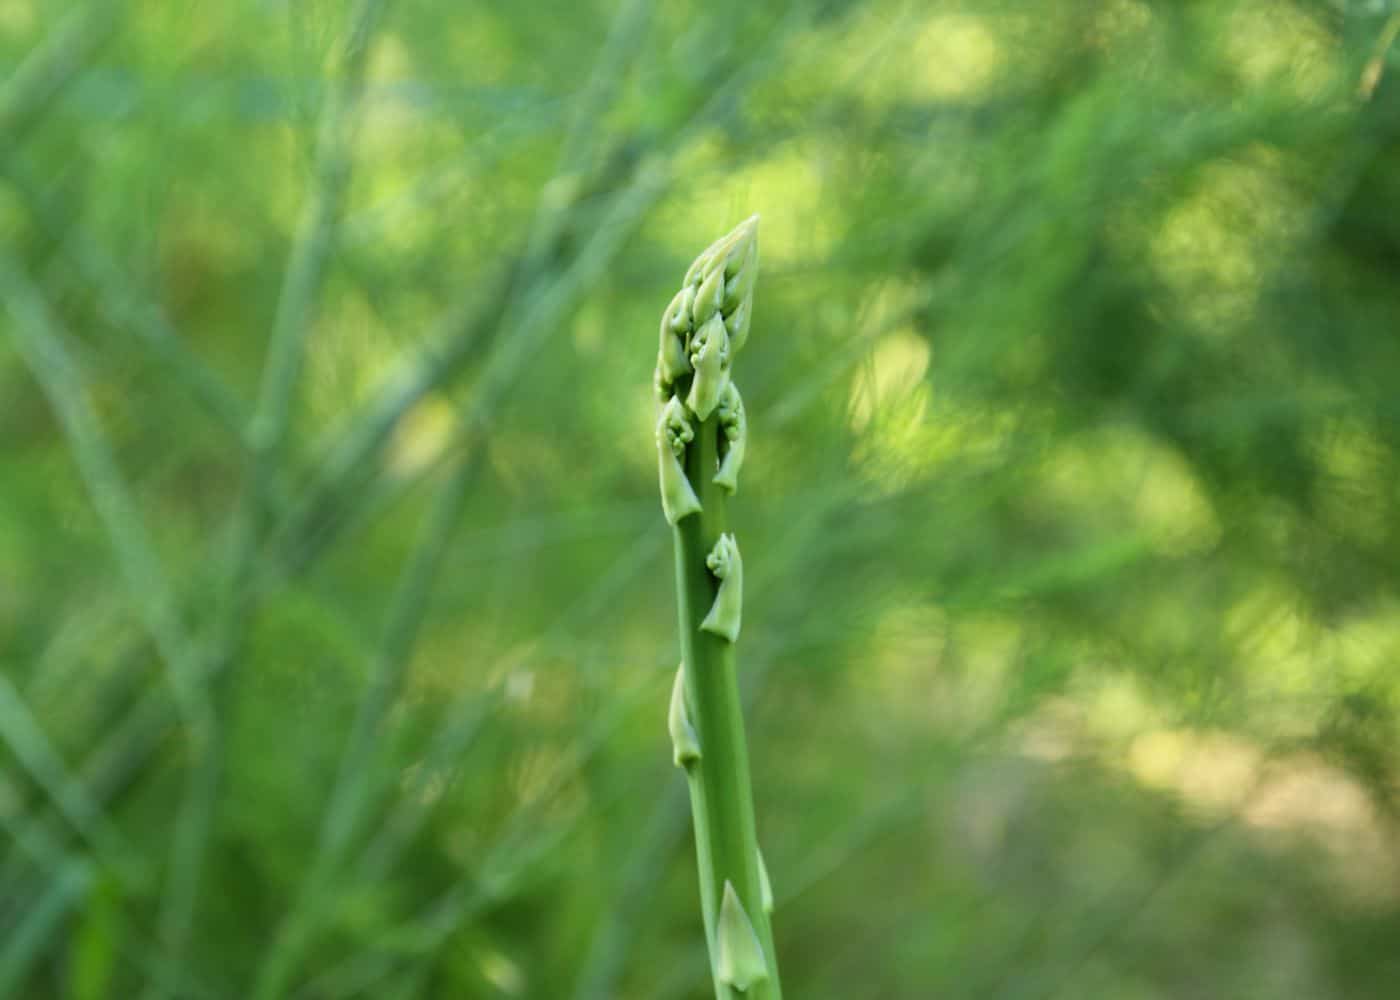 Spear of asparagus